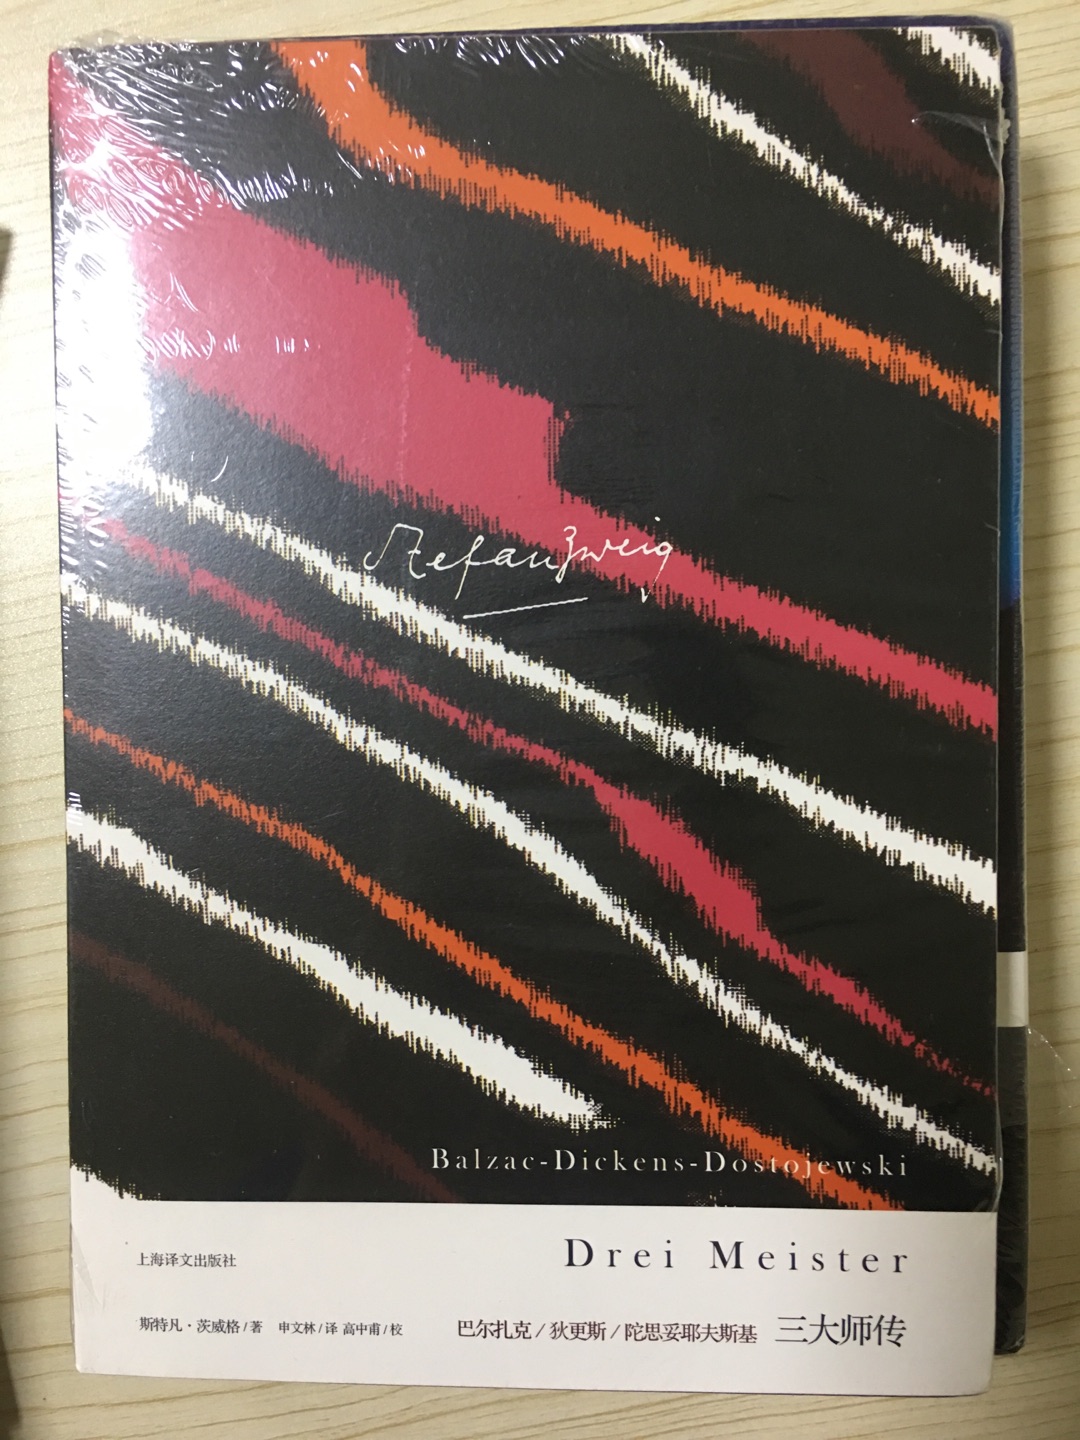 《三大师传》是2011年浙江文艺出版社出版的图书，作者是茨威格。本书是一部独具特色的“小说家的心理学”著作。